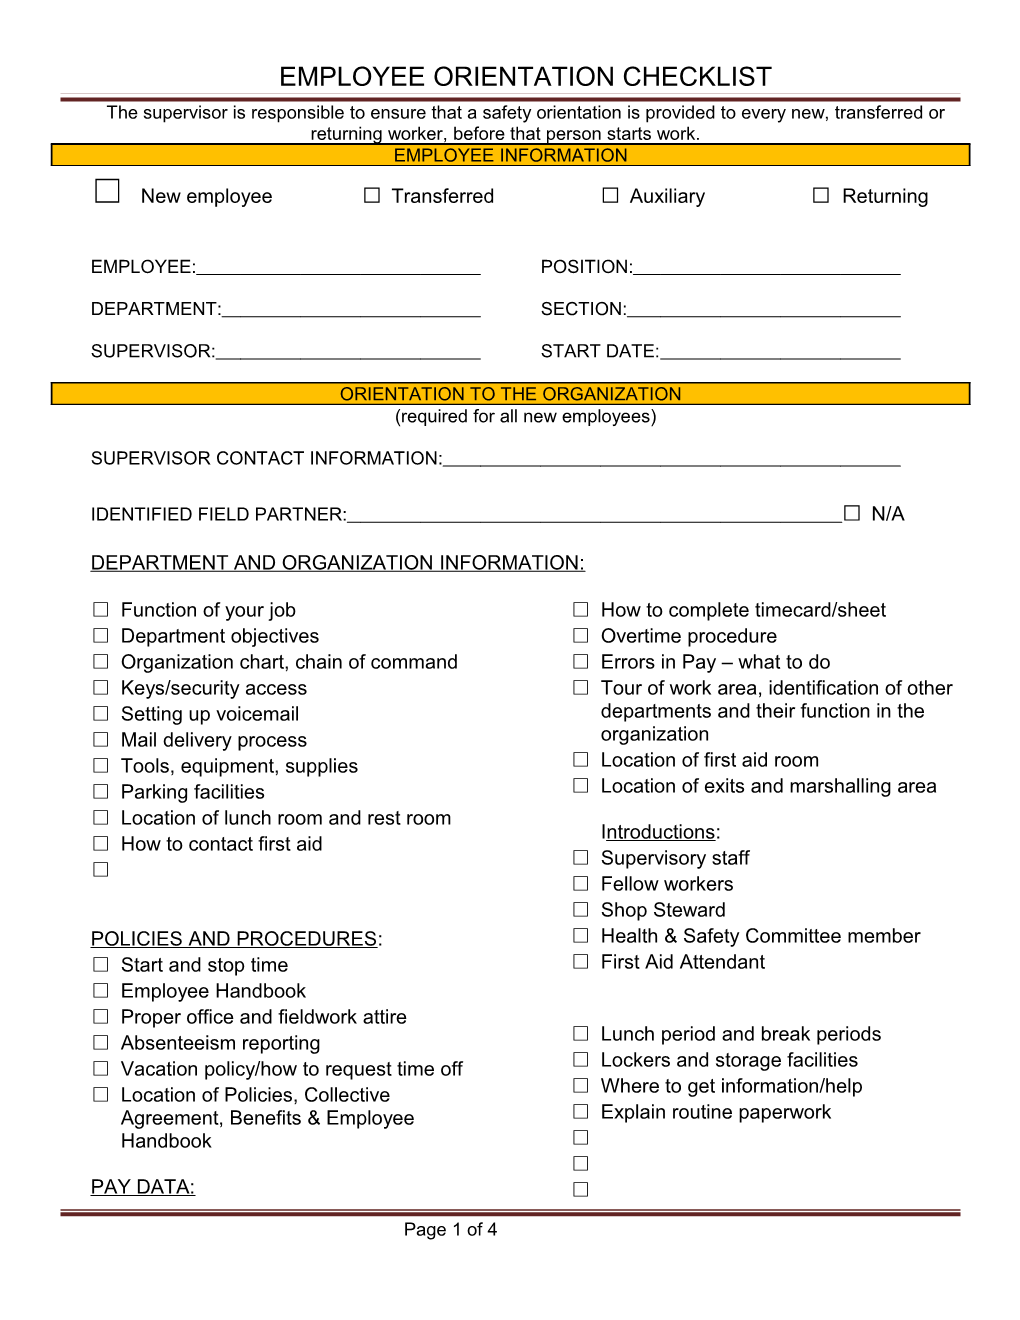 Employee Orientation Checklist